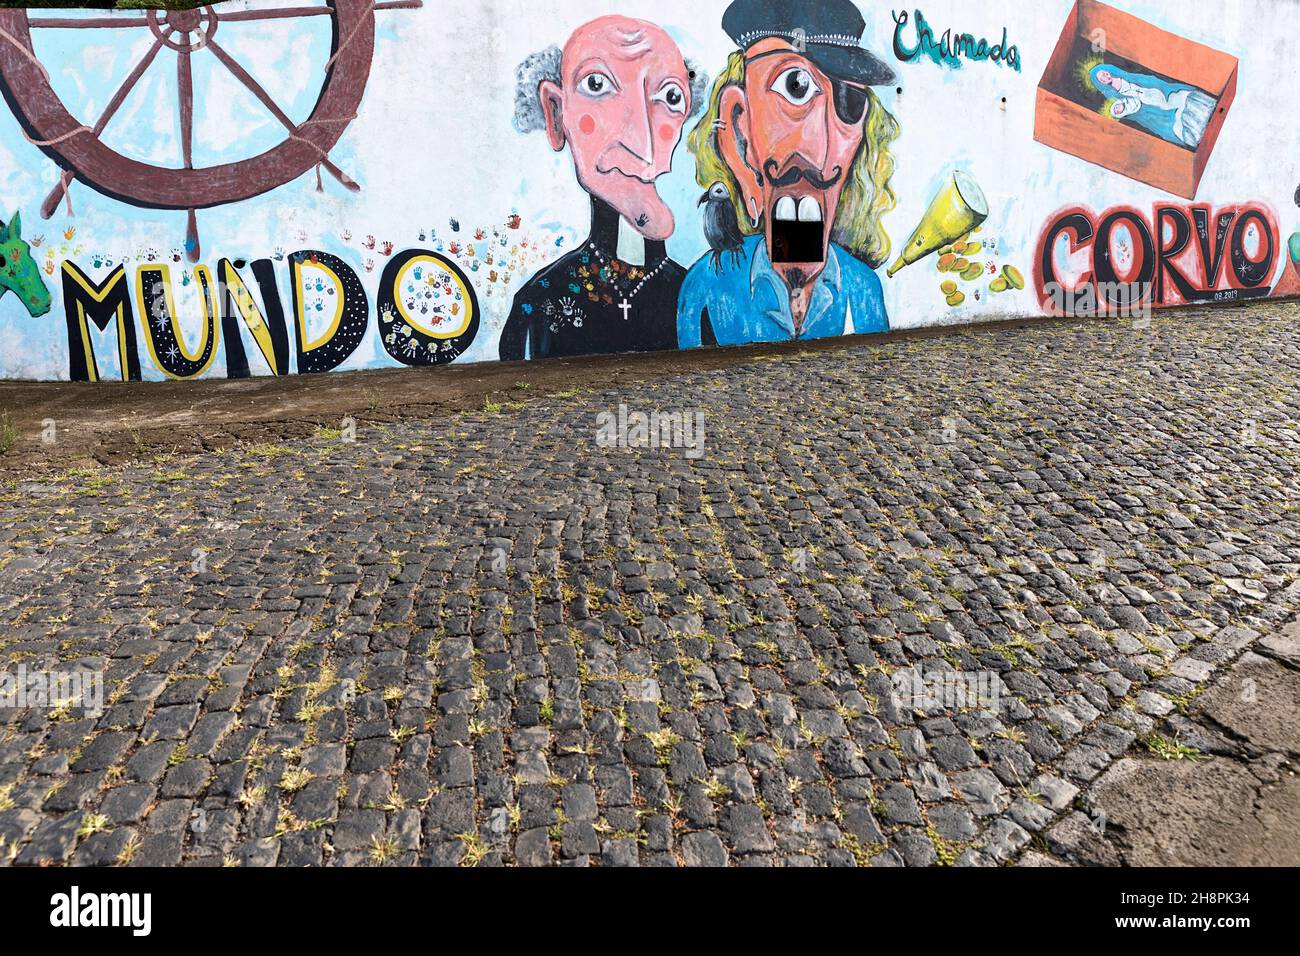 Graffiti sul muro, isola di Corvo, azzorre, Portogallo Foto Stock